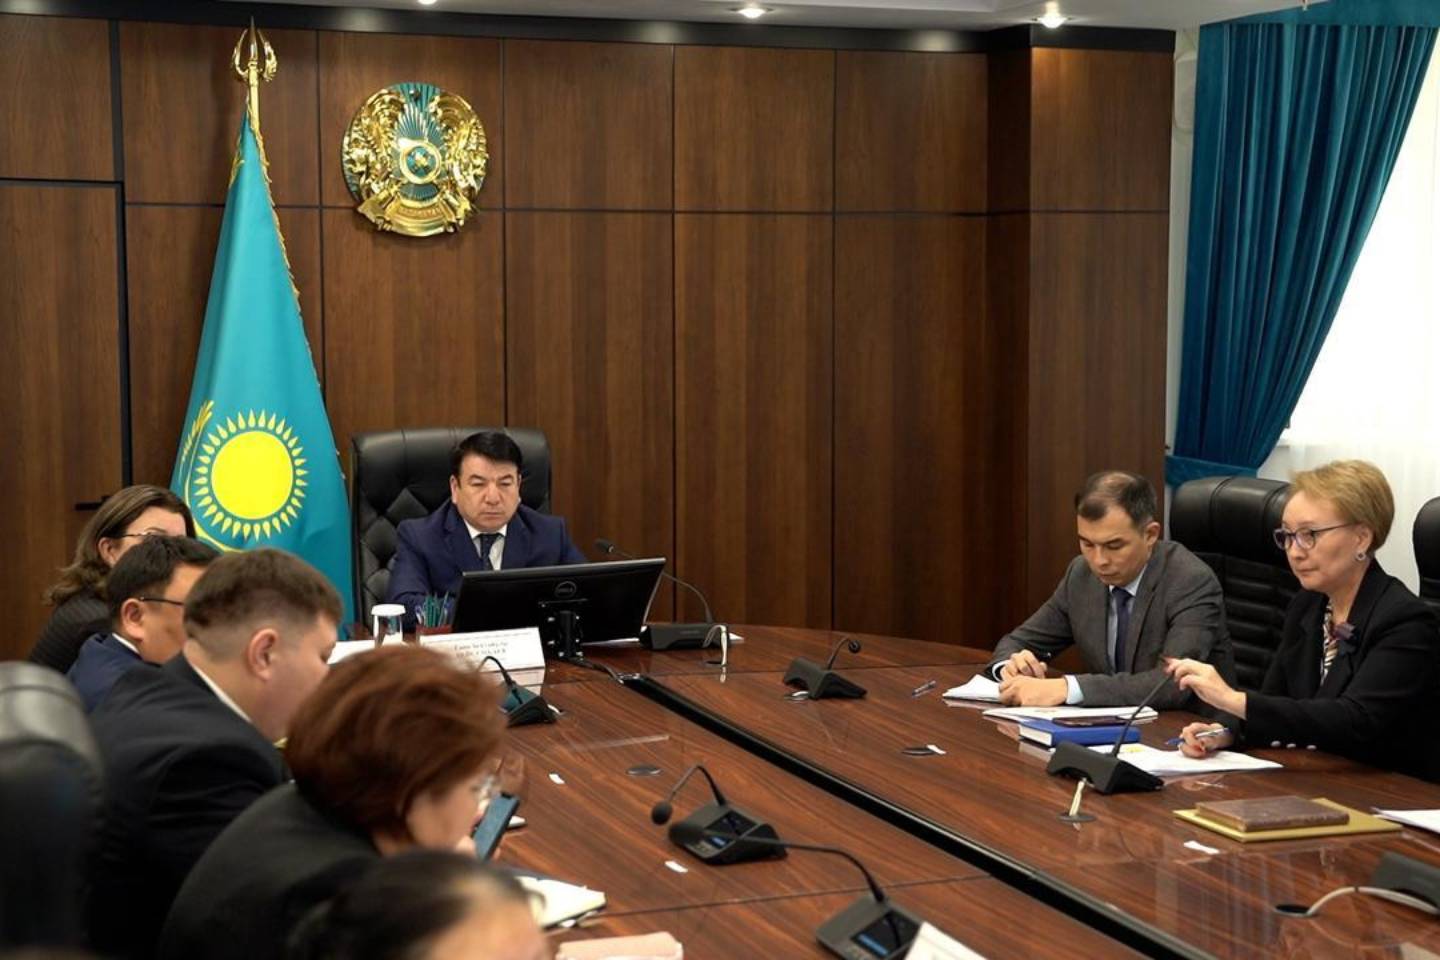 Новости Казахстана / Политика в Казахстане / Педагоги смогут самостоятельно подать заявление на прохождение аттестации в РК